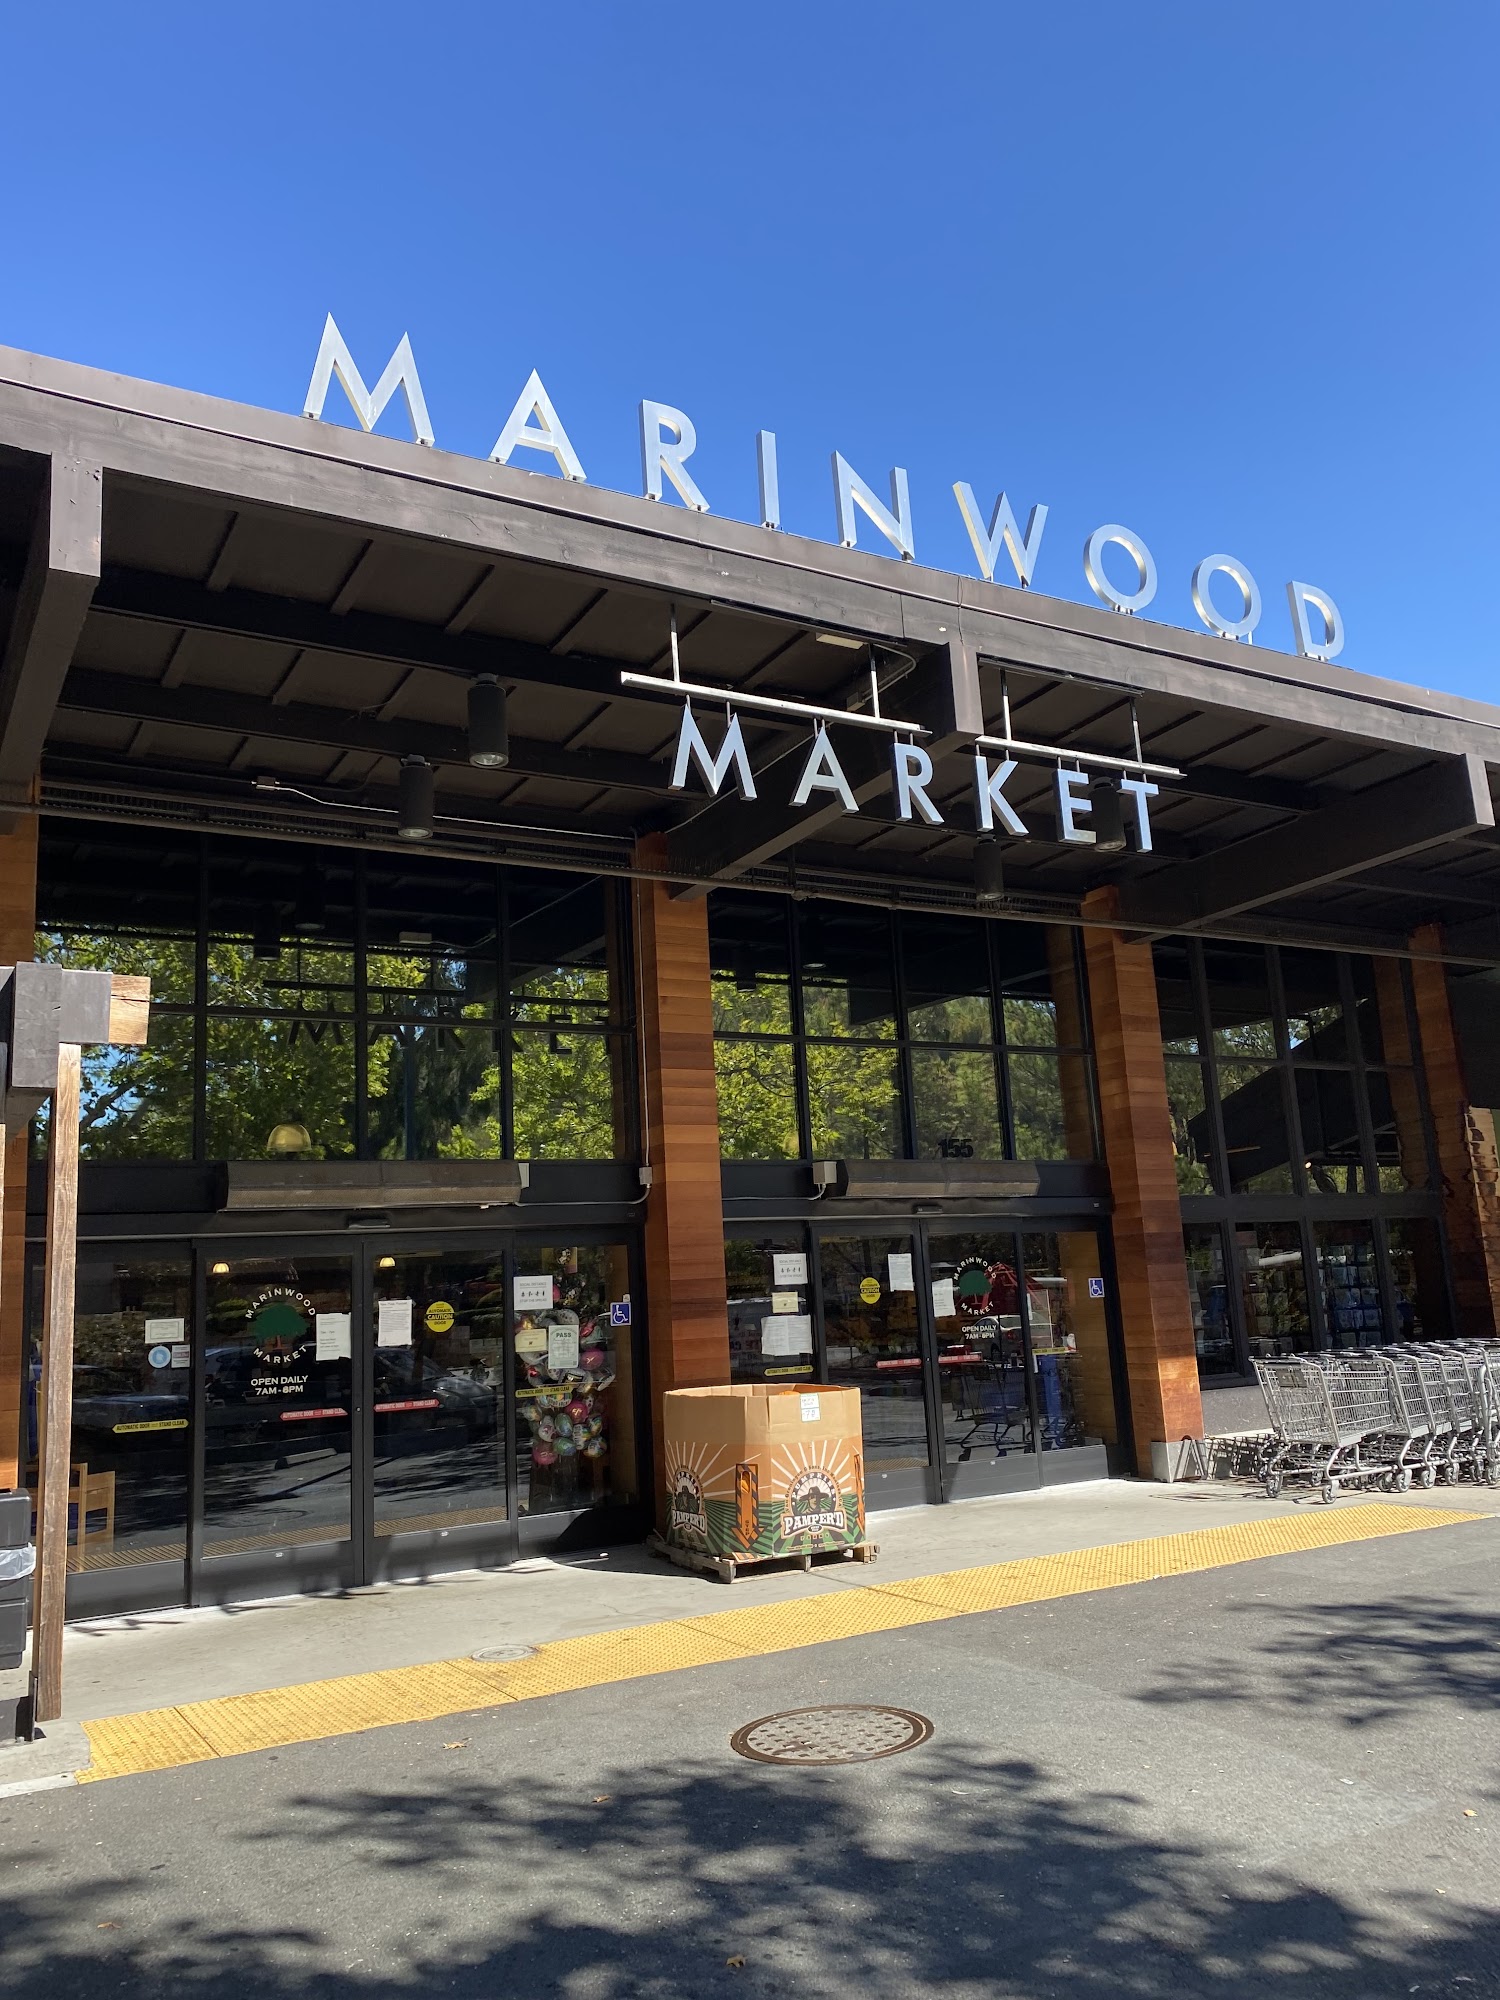 Marinwood Market